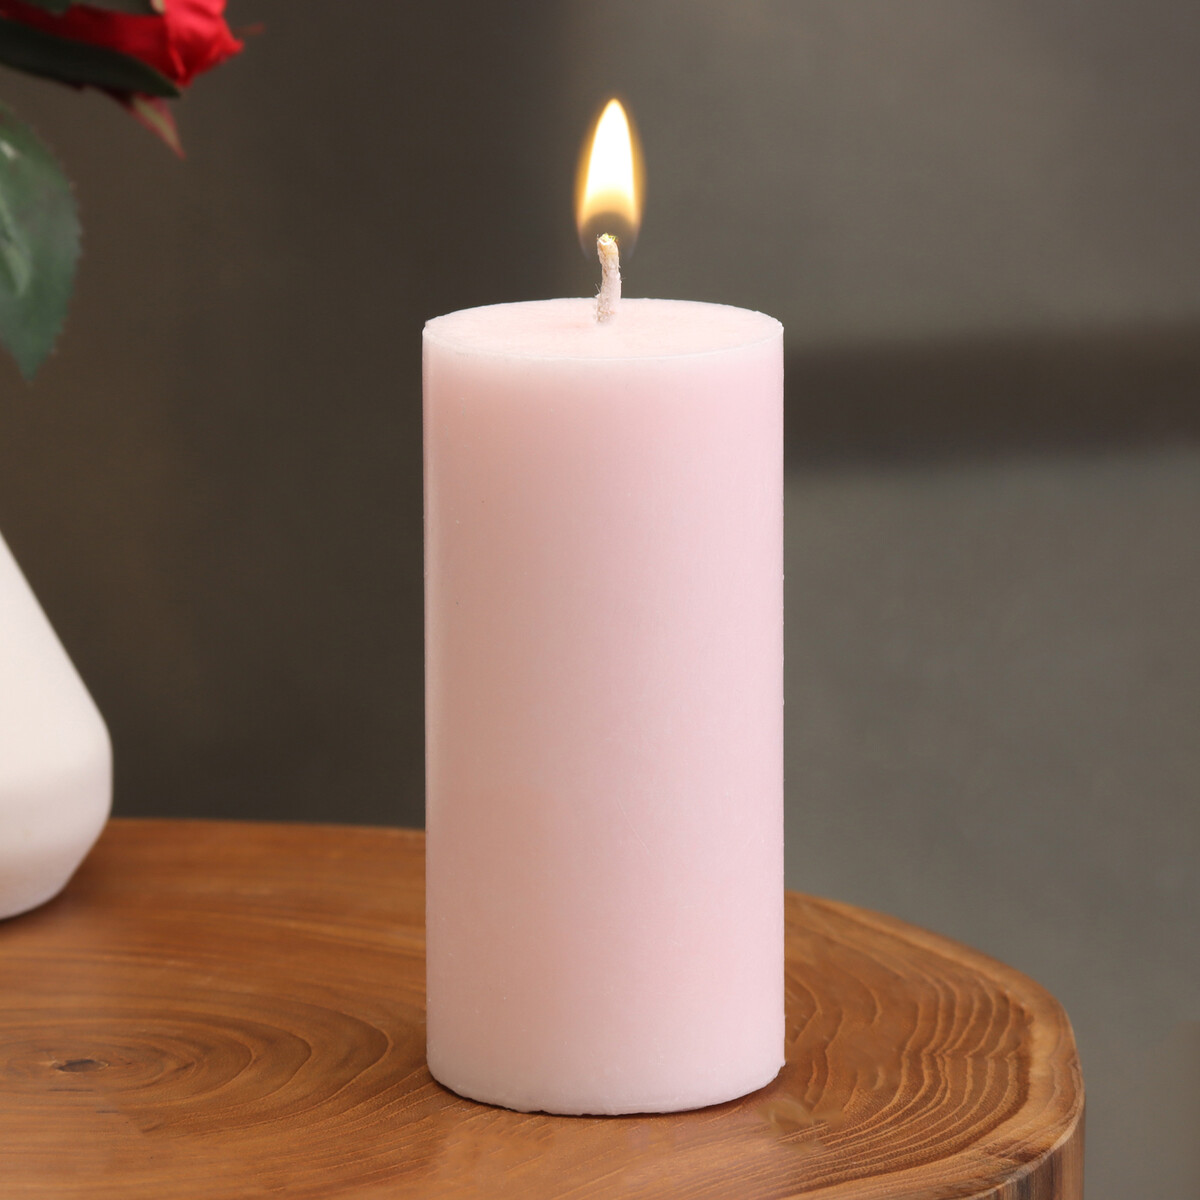 Свеча-цилиндр гладкая, 5х10 см, светло-розовая, 6 ч свеча цилиндр гладкая 5х7 5 см пальмовый воск жемчужная 6 ч